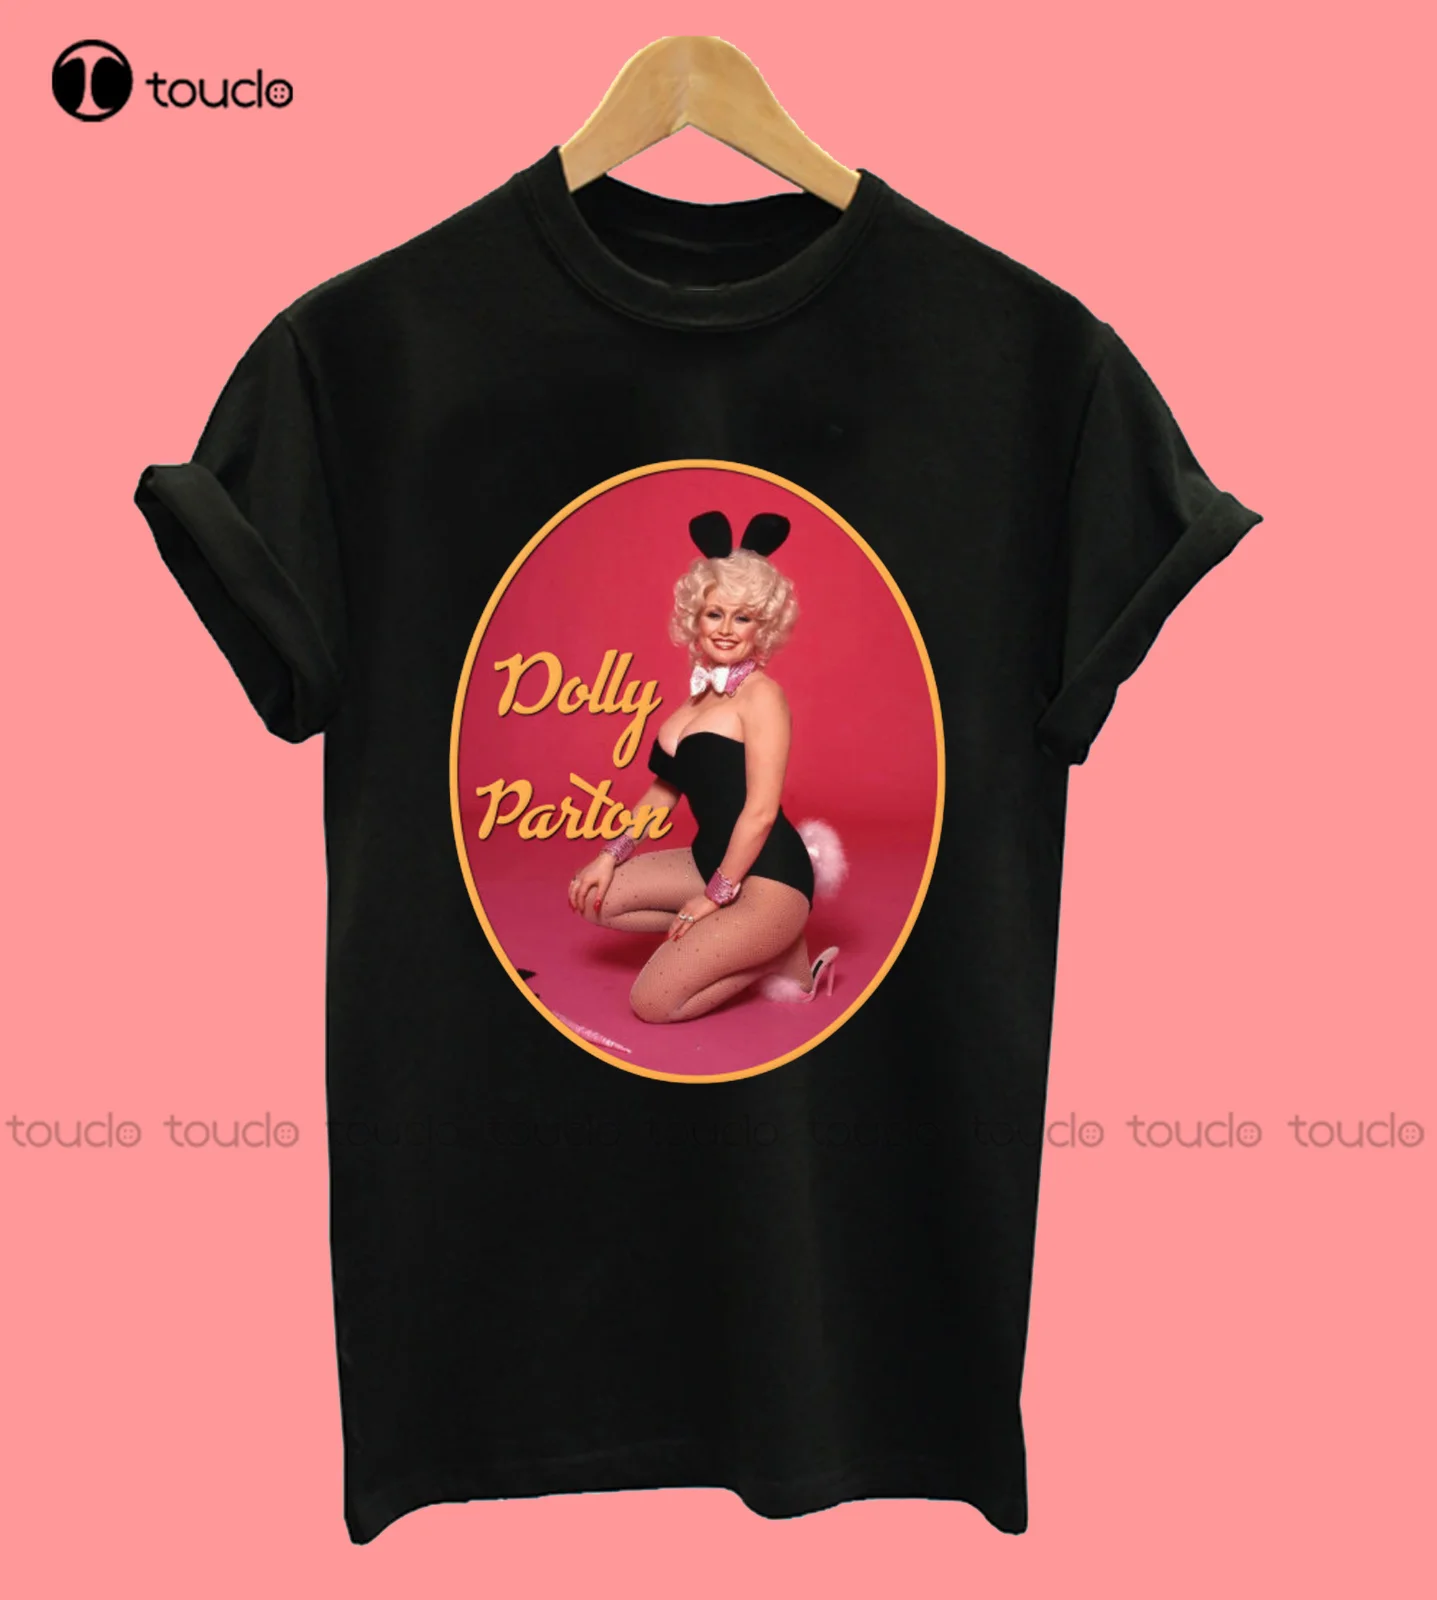 

Мужская хлопковая футболка Dolly Parton Play-boy Bunny Music, топы для мальчиков, футболки и рубашки на заказ, модная забавная футболка унисекс для подрост...